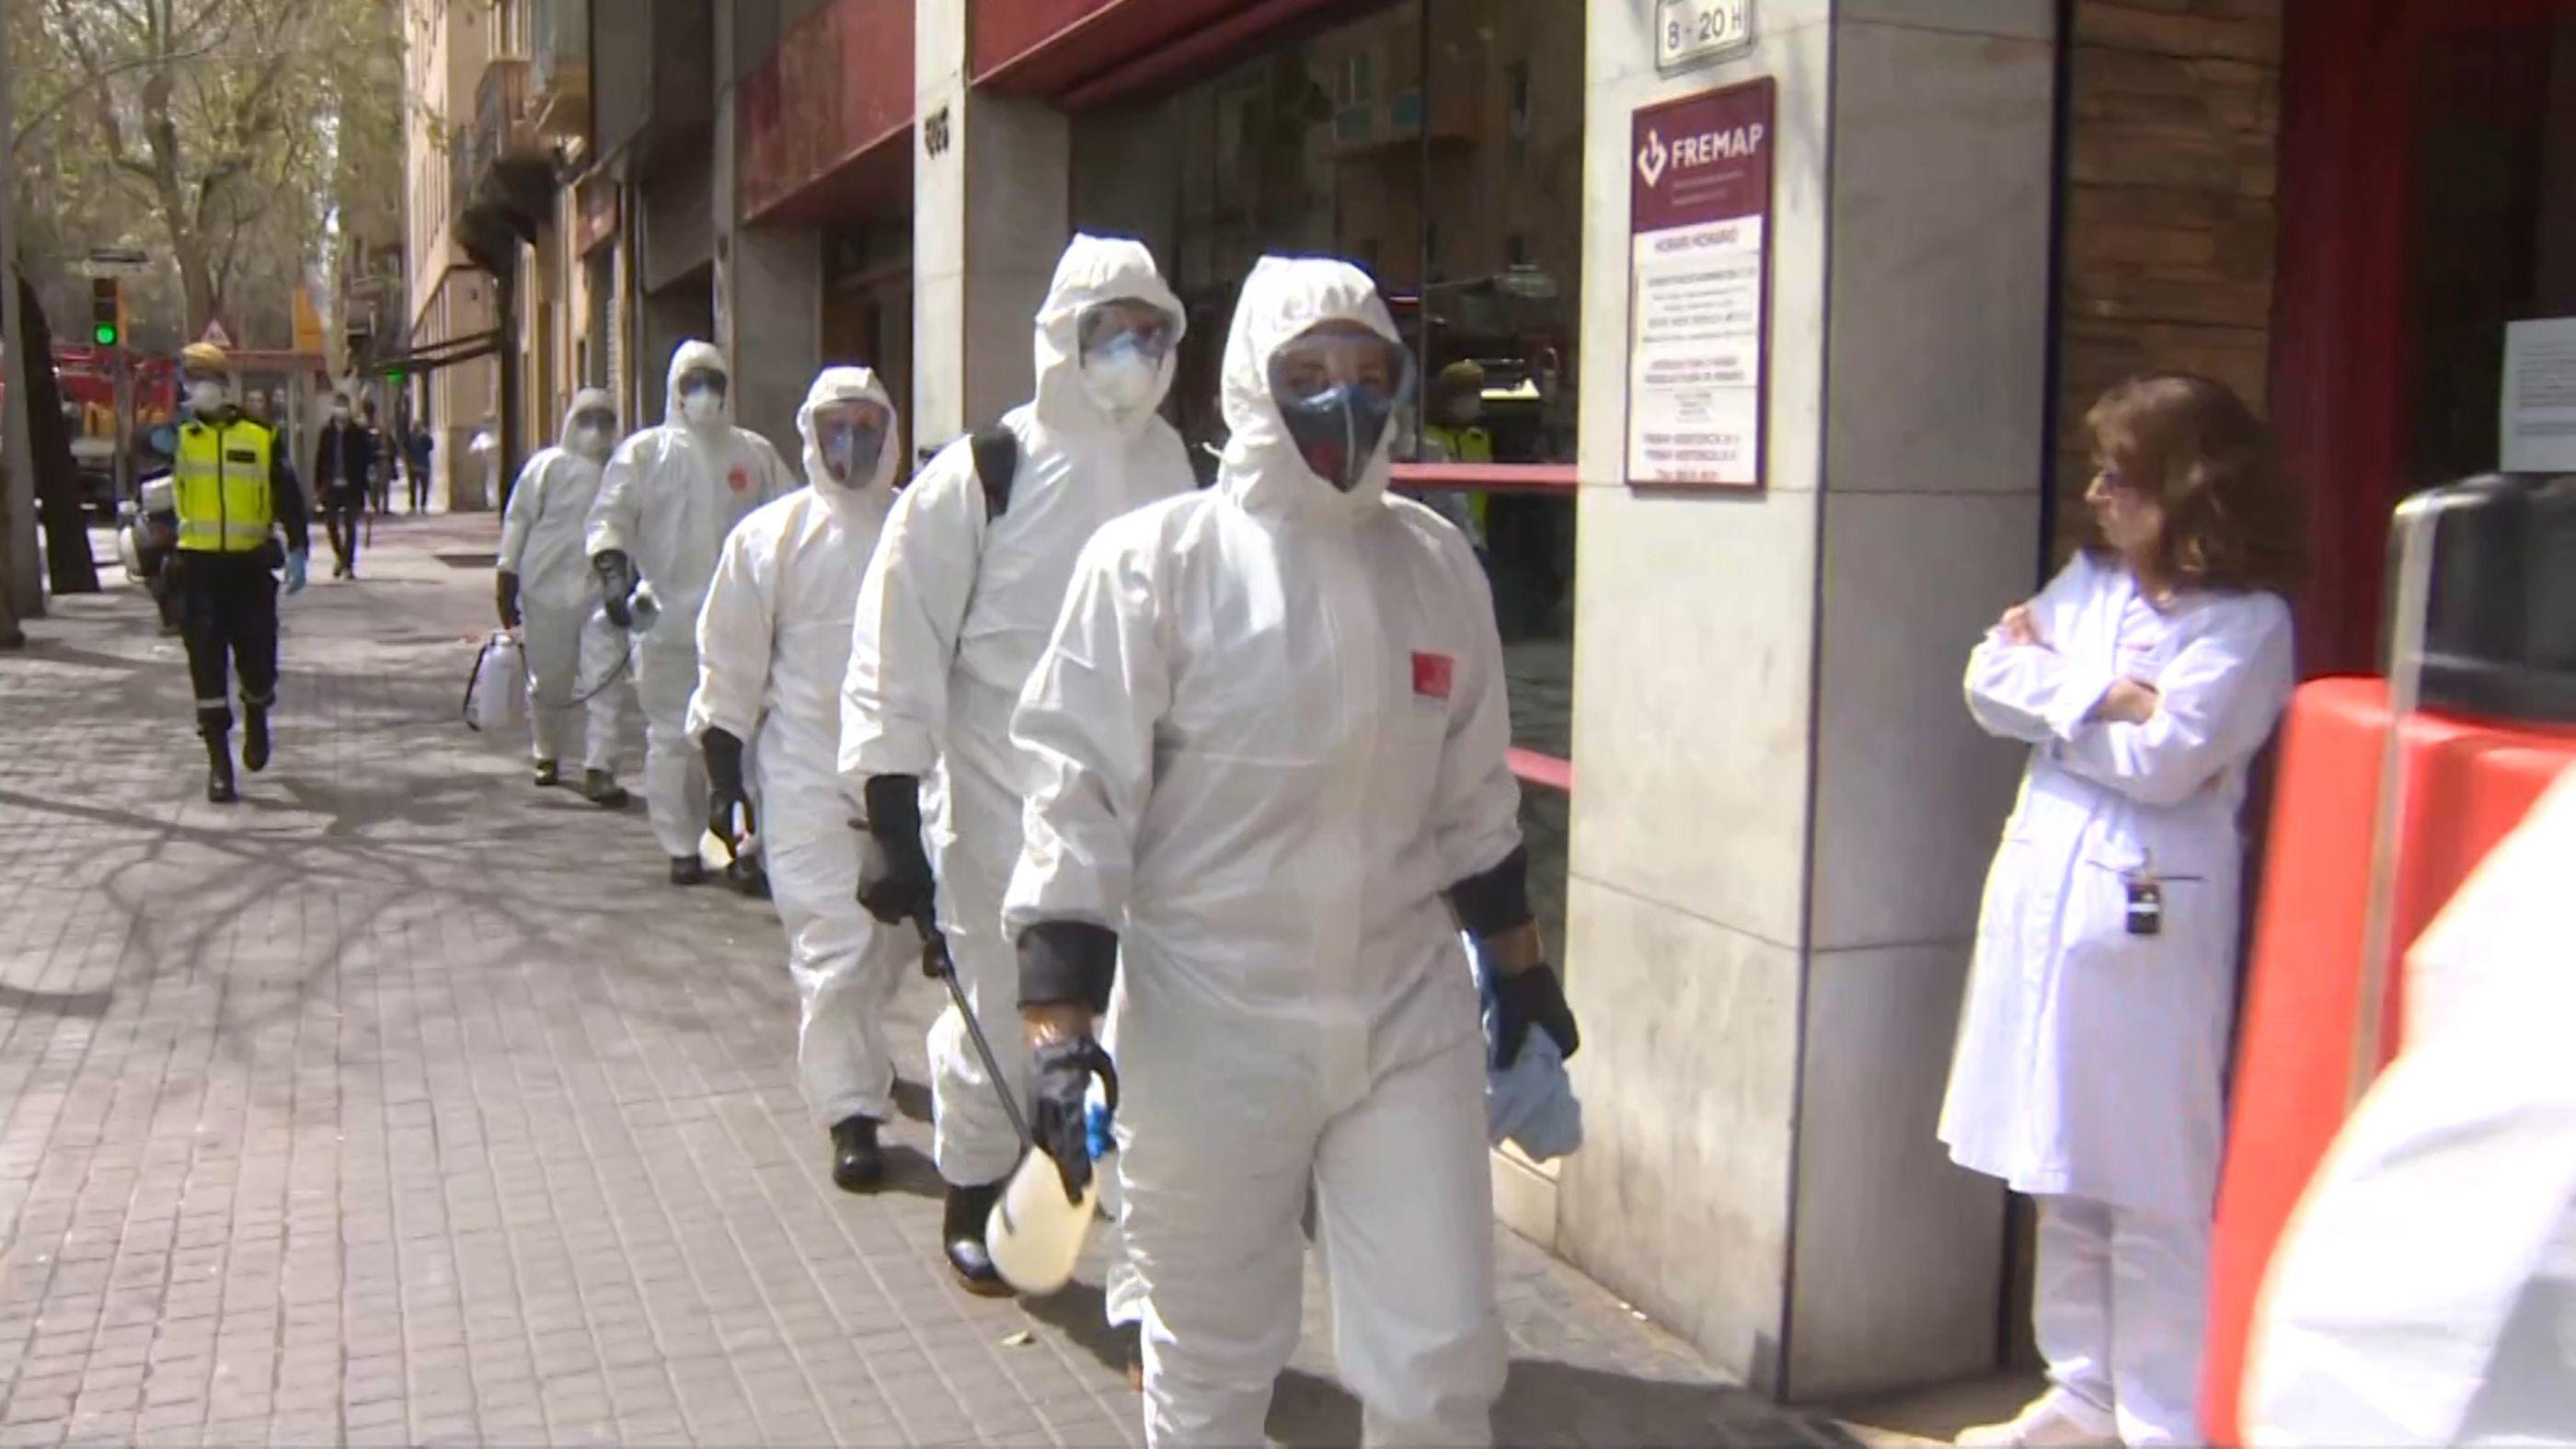 Portugal registra reacutecord diario de 37 viacutectimas por coronavirus y roza los 10000 contagios